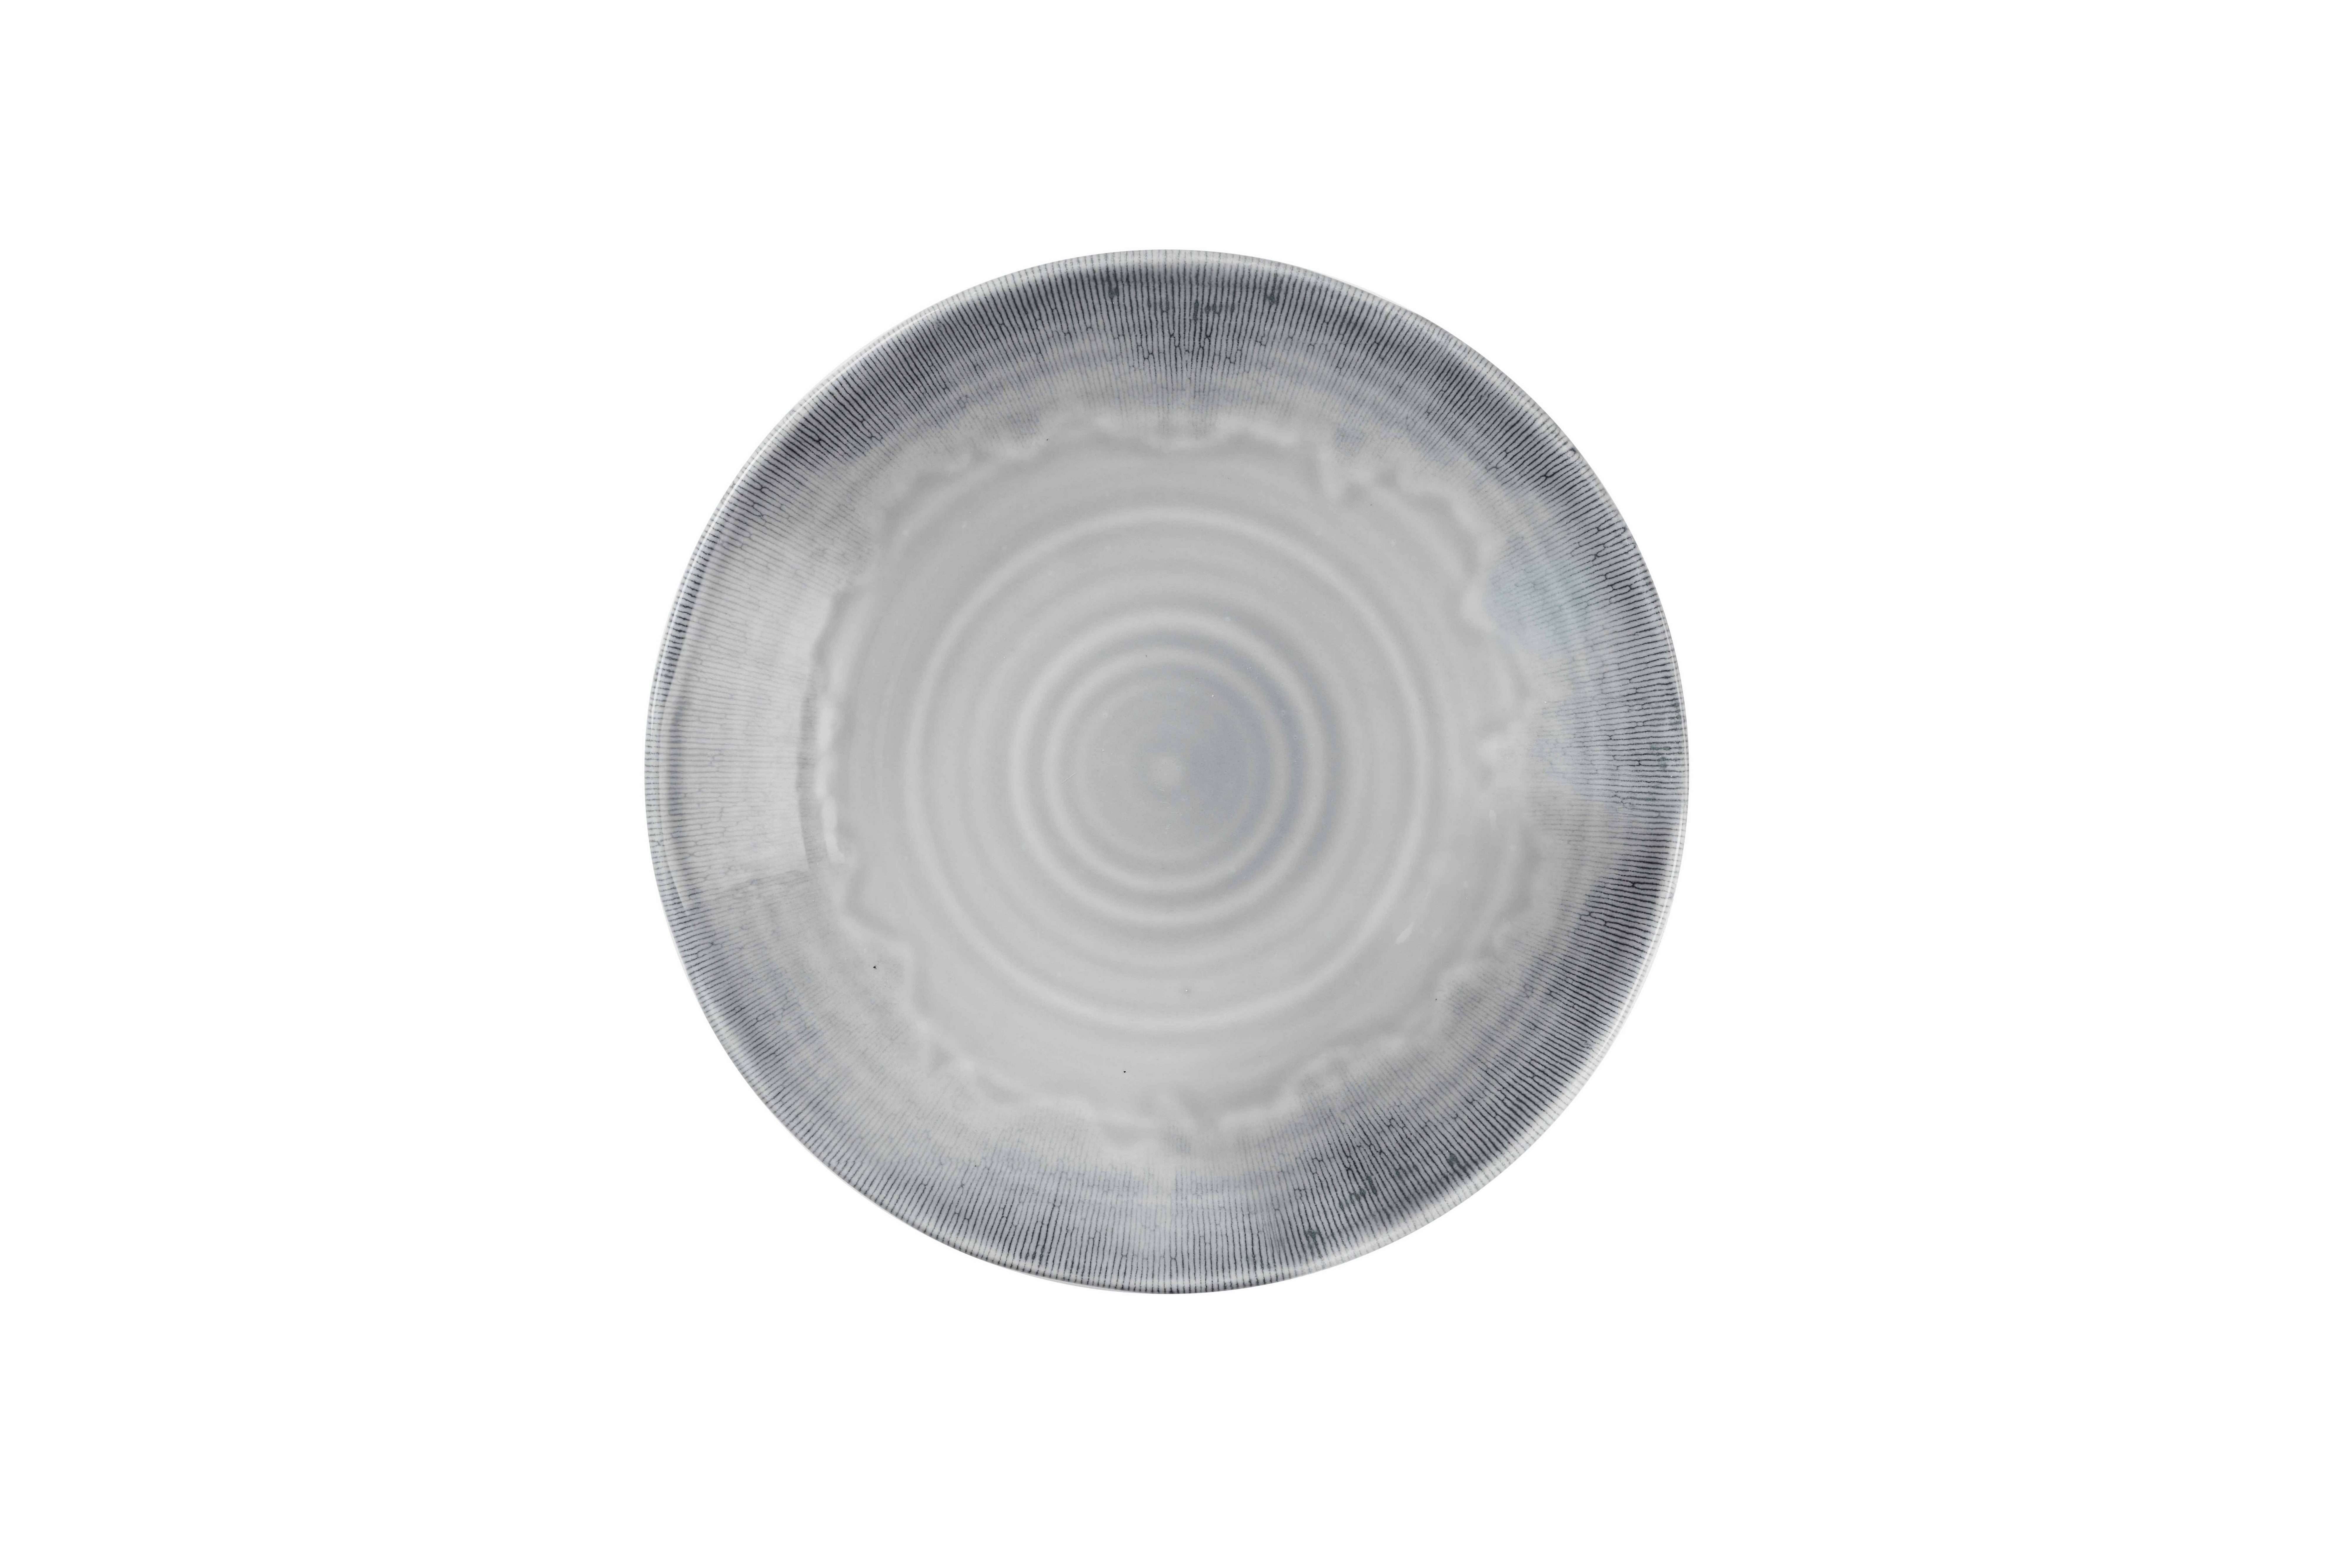 Flux Organisch Dudson Feinstes Porzellan Dudson Rund Grau Teller-Set Grey Tiefenteller 28cm 12, Harvest